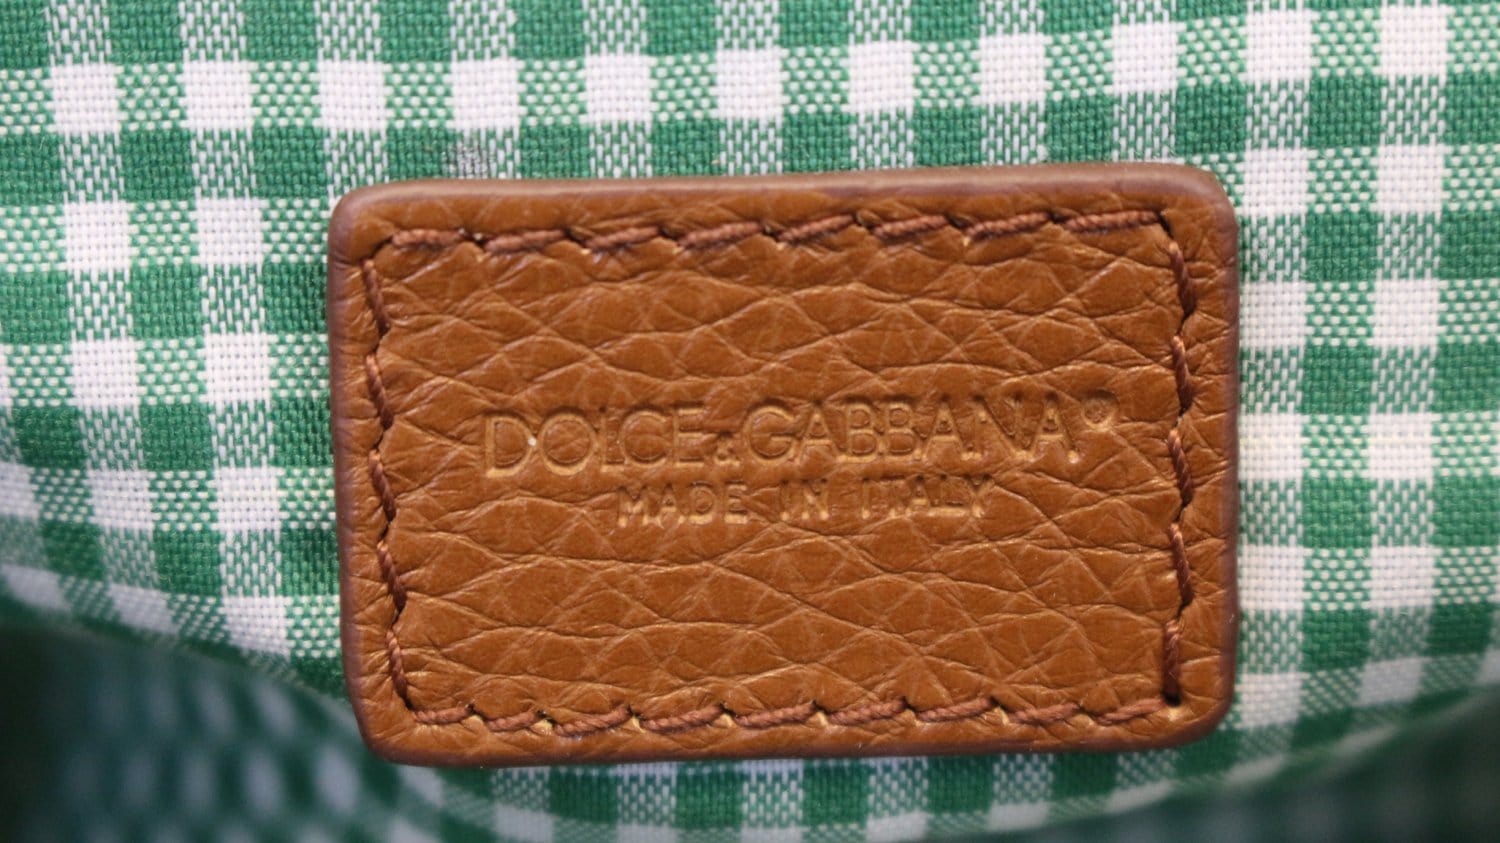 Sicily Medium Leather Shoulder Bag in Brown - Dolce Gabbana